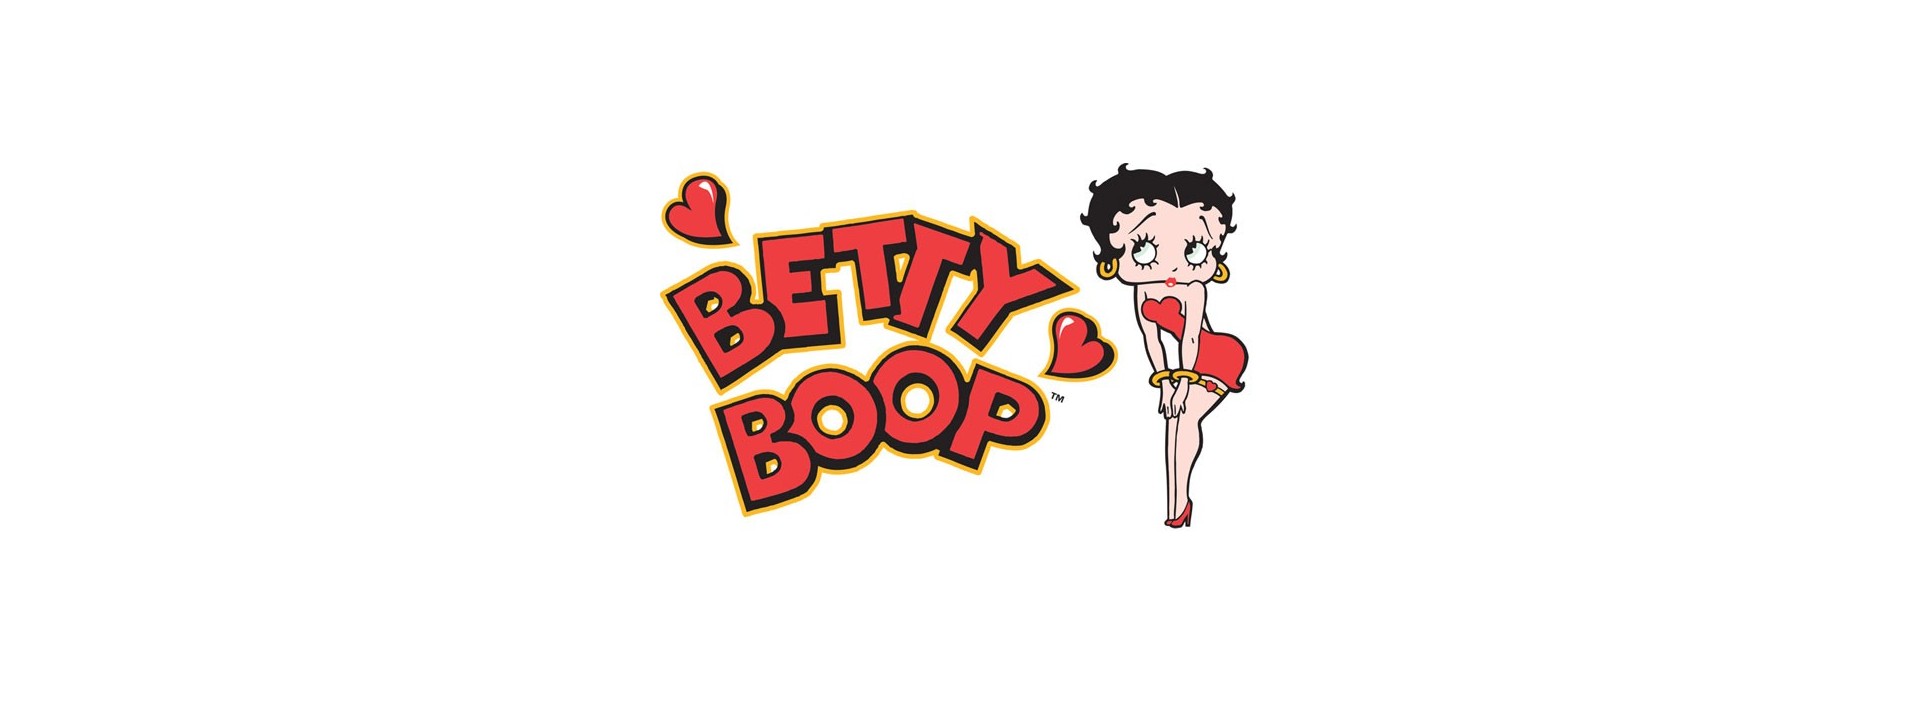 Funko Pop Betty Boop en Mascromos.com Tu web de cromos y Funko Pop online